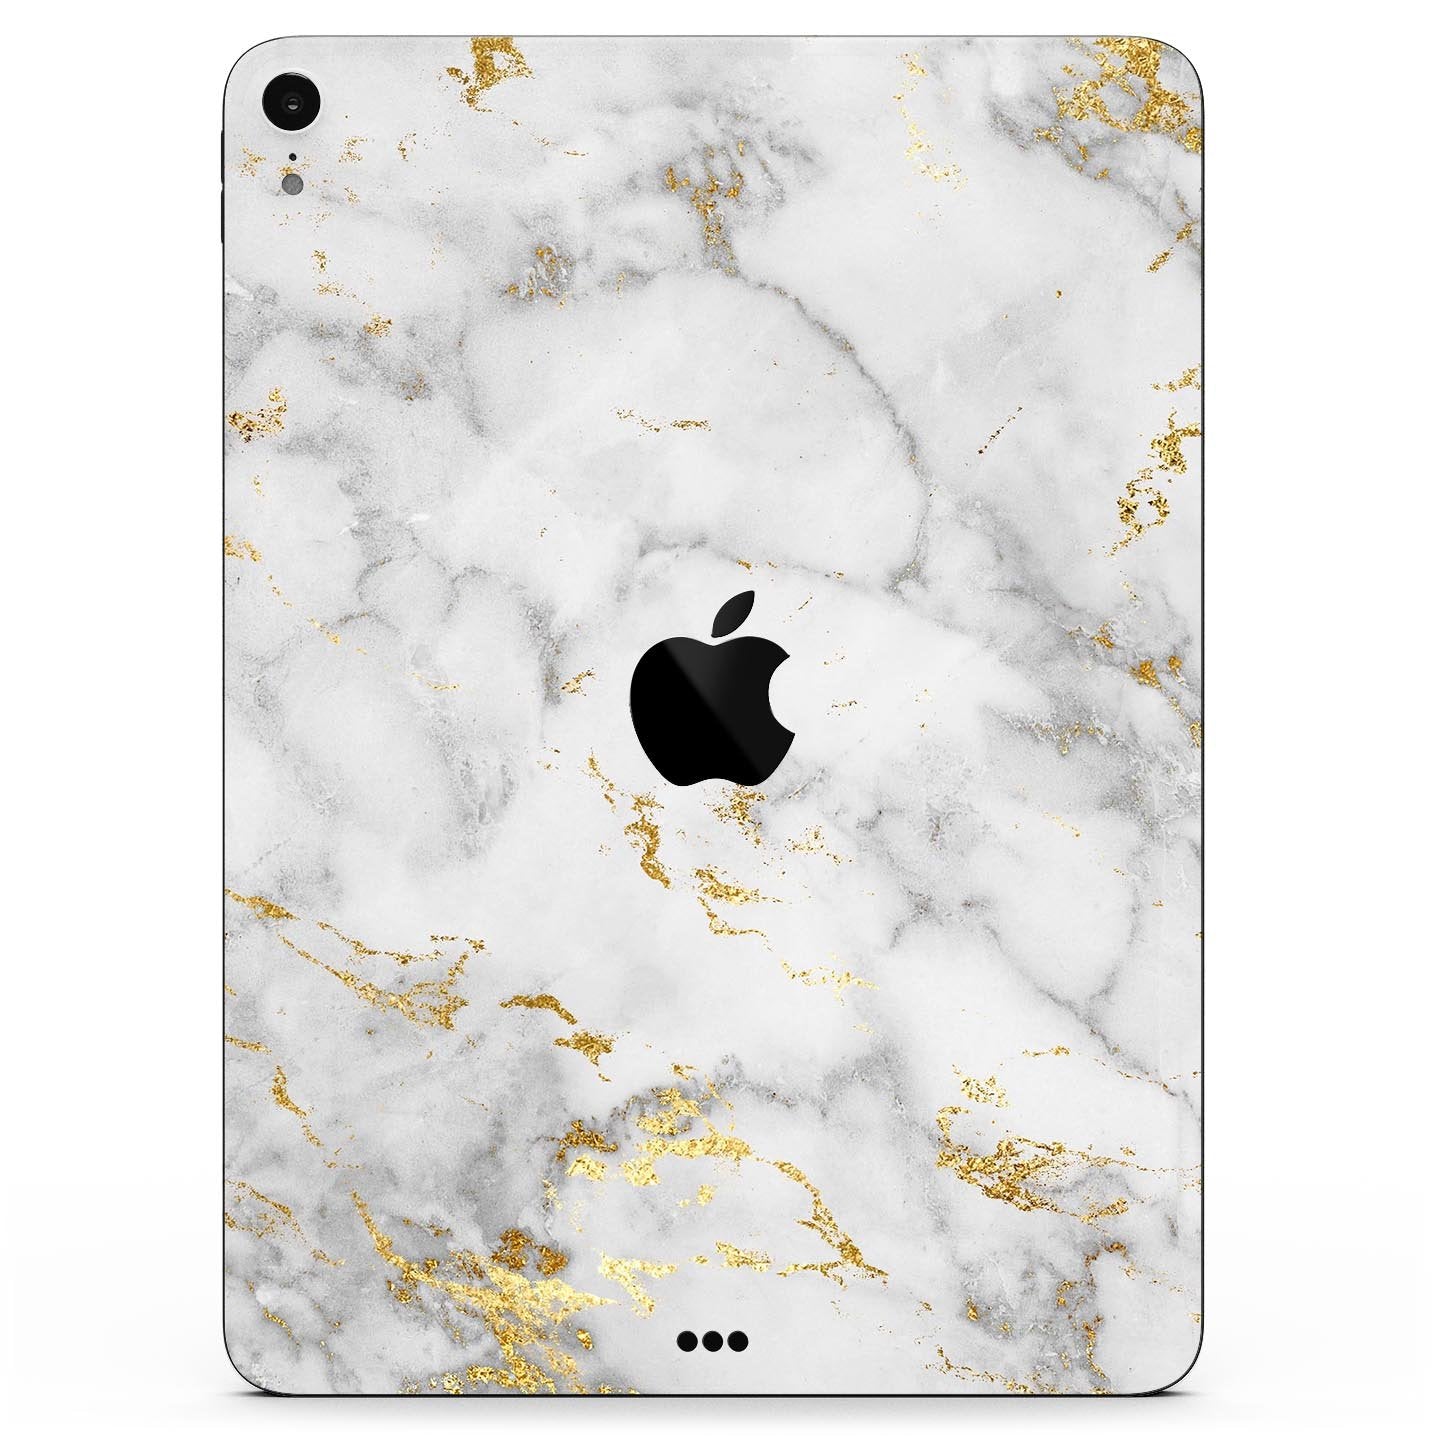 Marble & Digital Gold Foil V3 - Full Body Skin Decal for the Apple